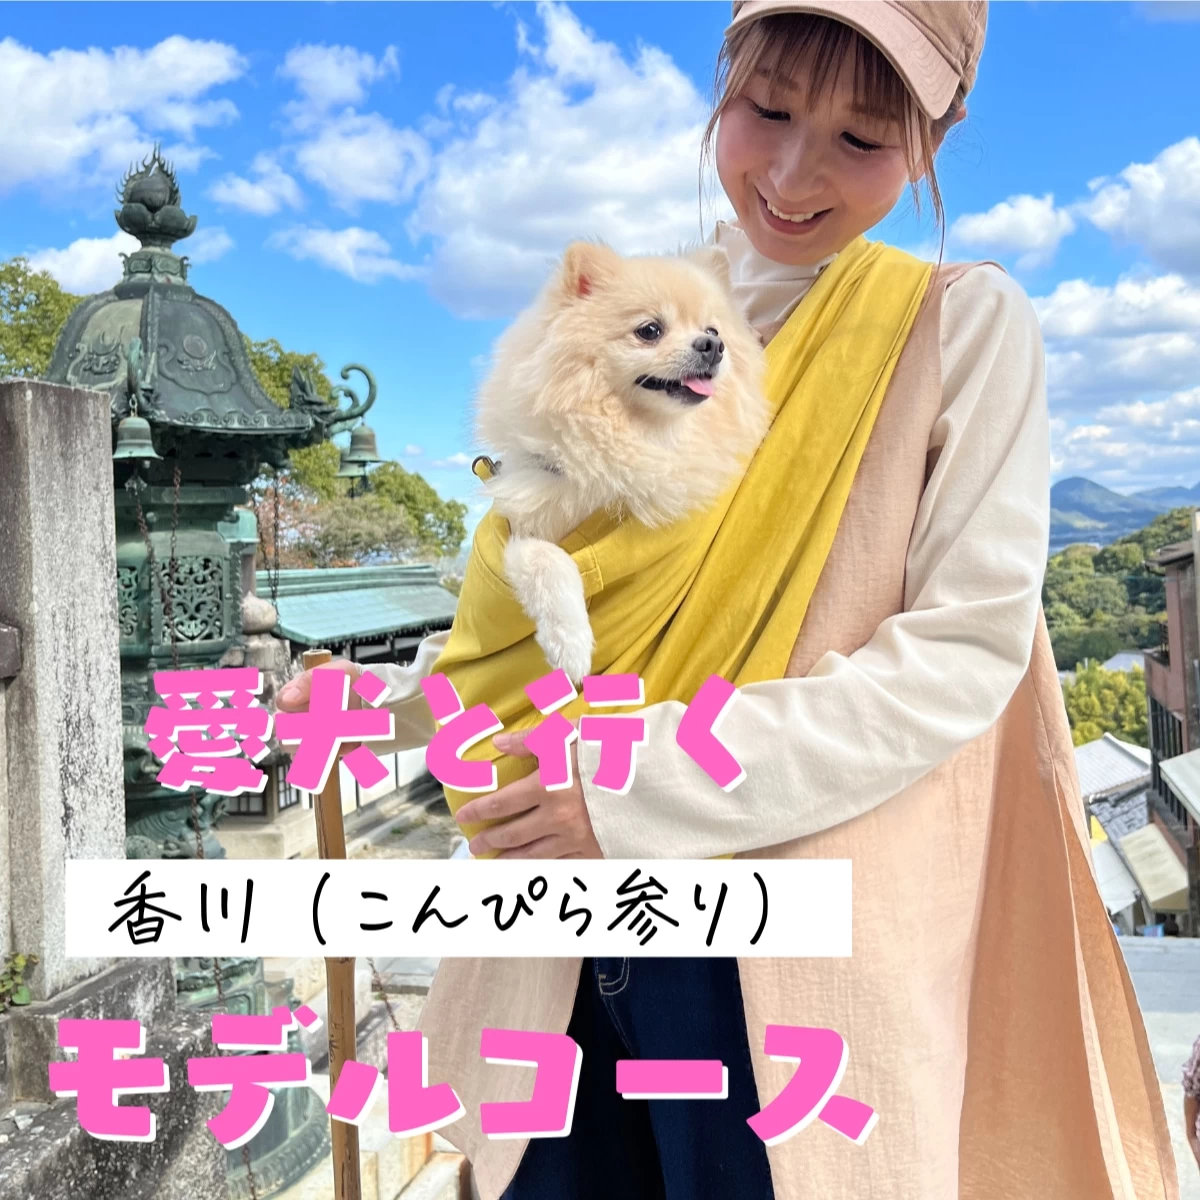 香川のこんぴら参りへ！  愛犬とリフレッシュ旅  